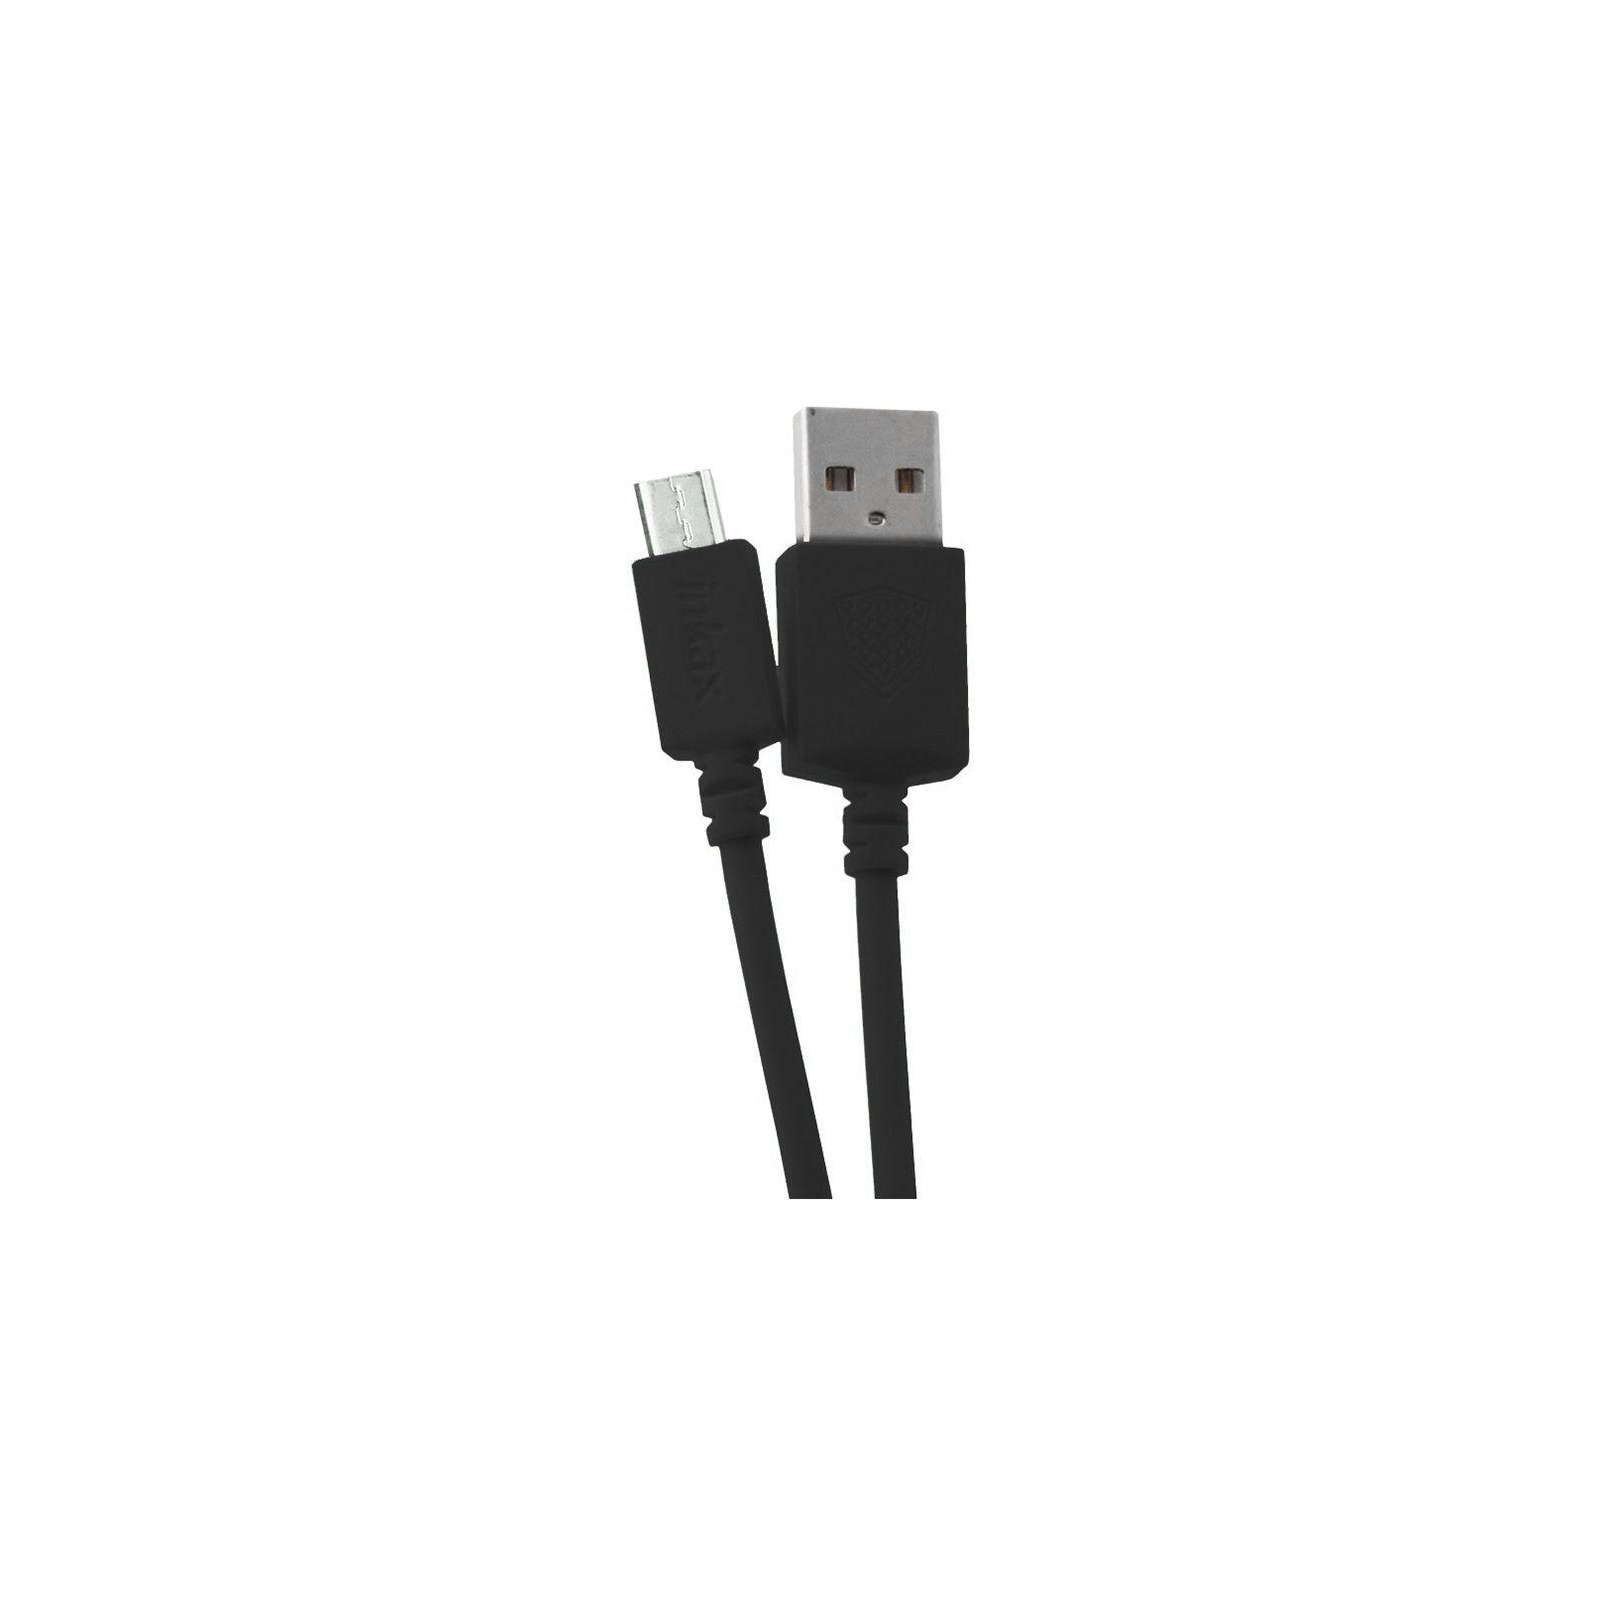 Дата кабель USB 2.0 AM to Micro 5P 2.0m CK-08 Black Inkax (F_62190)